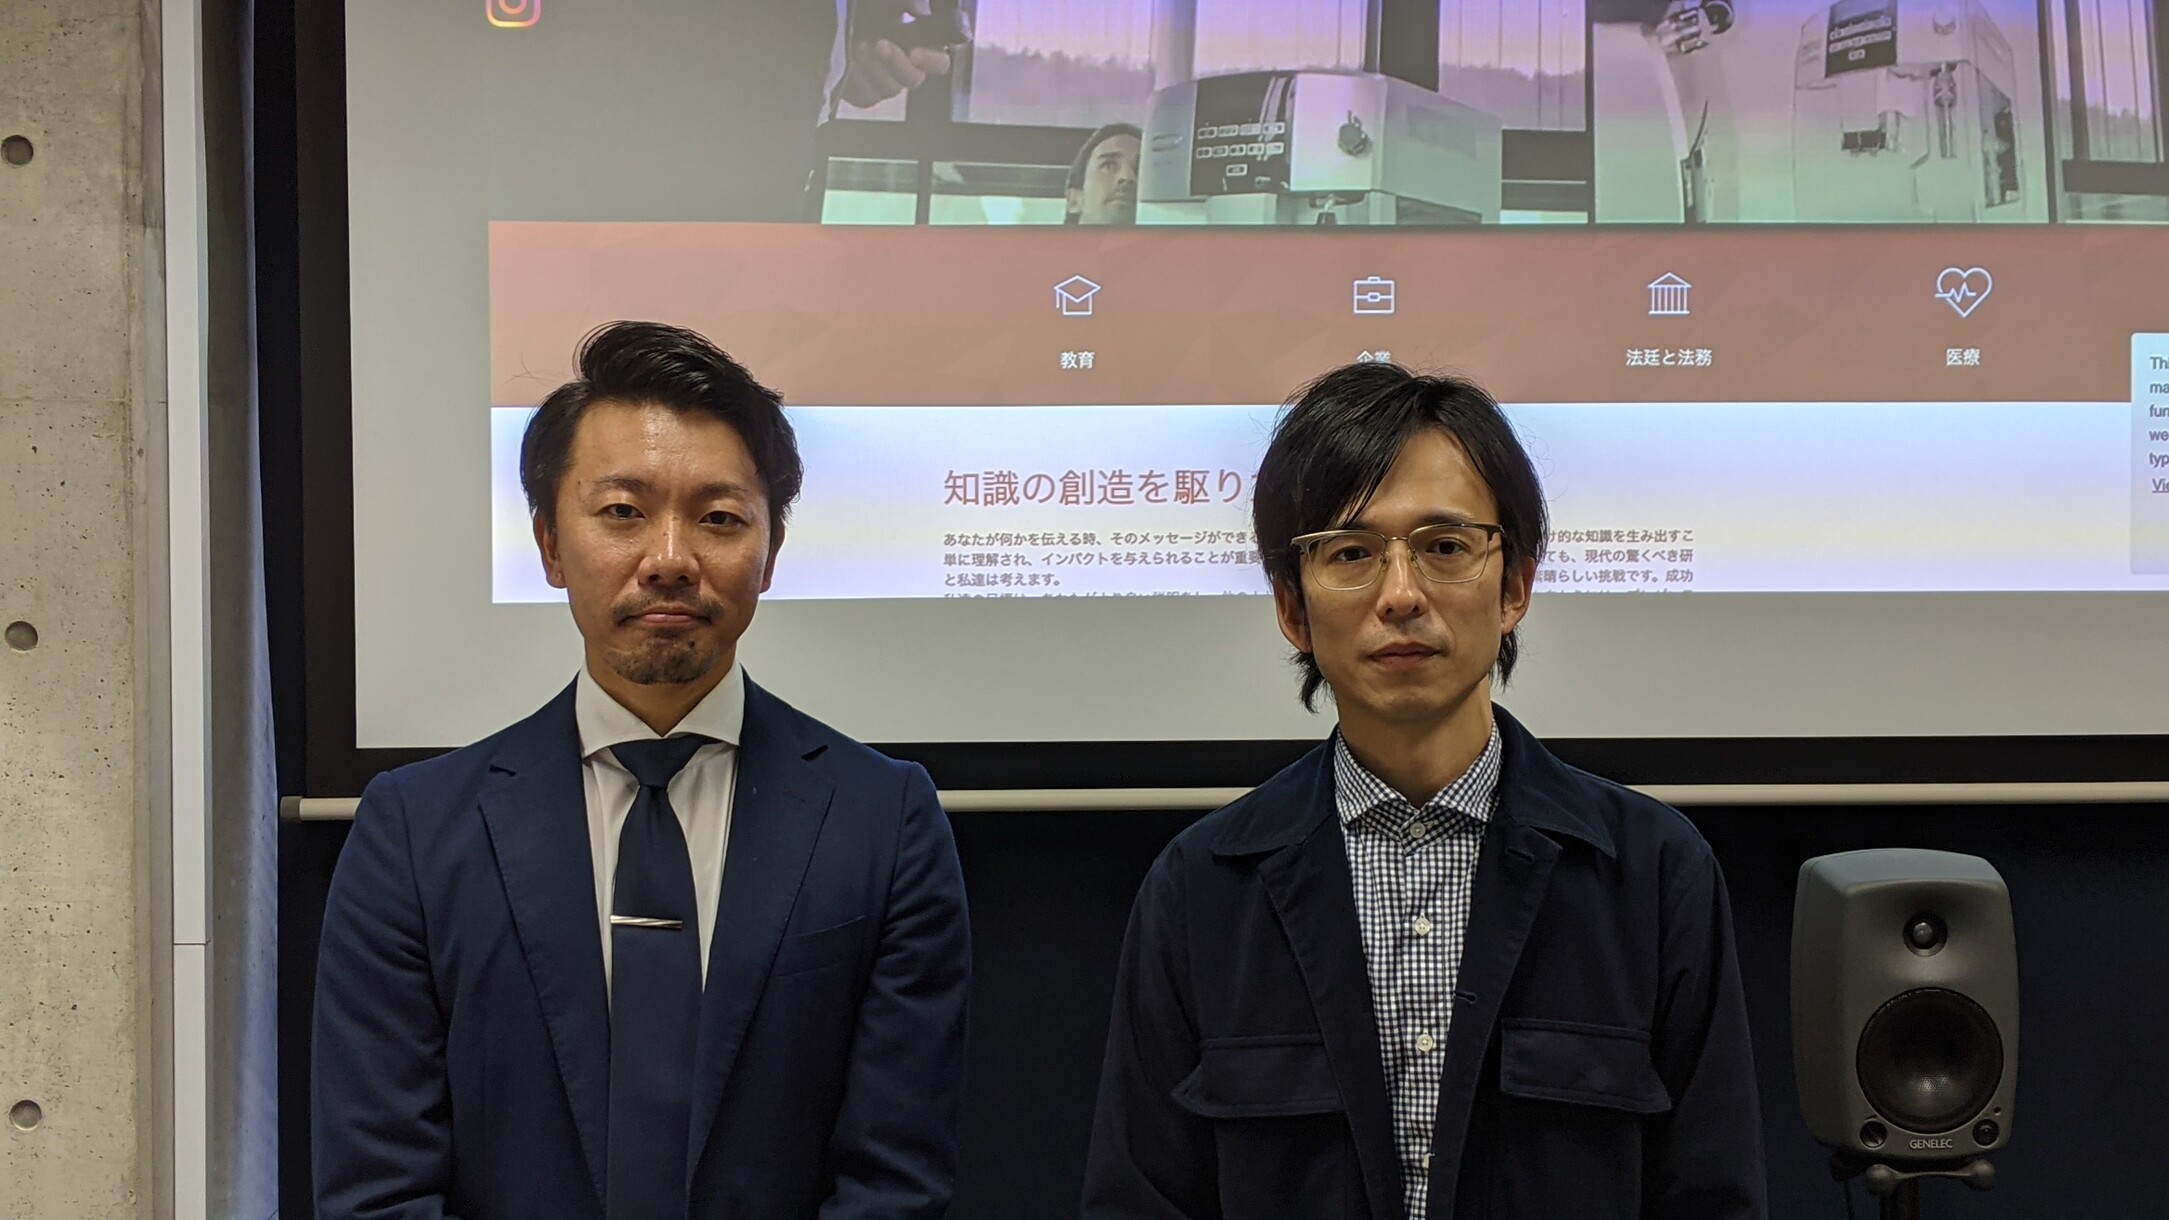 教育産業株式会社 村田様(左) 名古屋学芸大学 鈴木様(右)